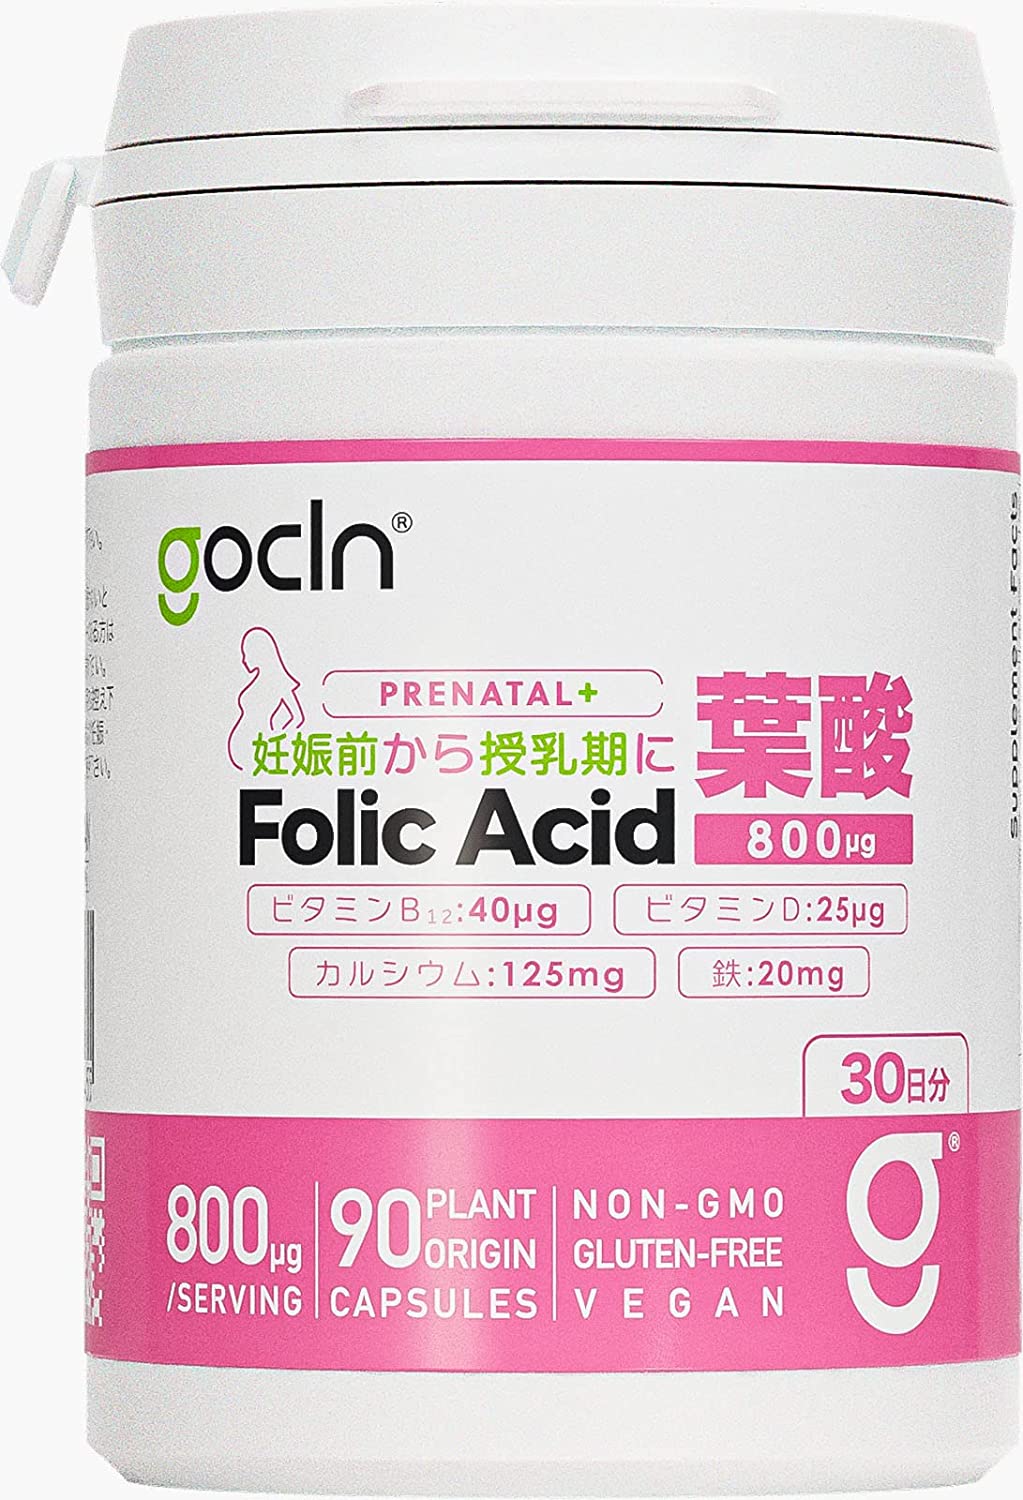 цена Фолиевая кислота GoCLN, 800 мг, 90 капсул